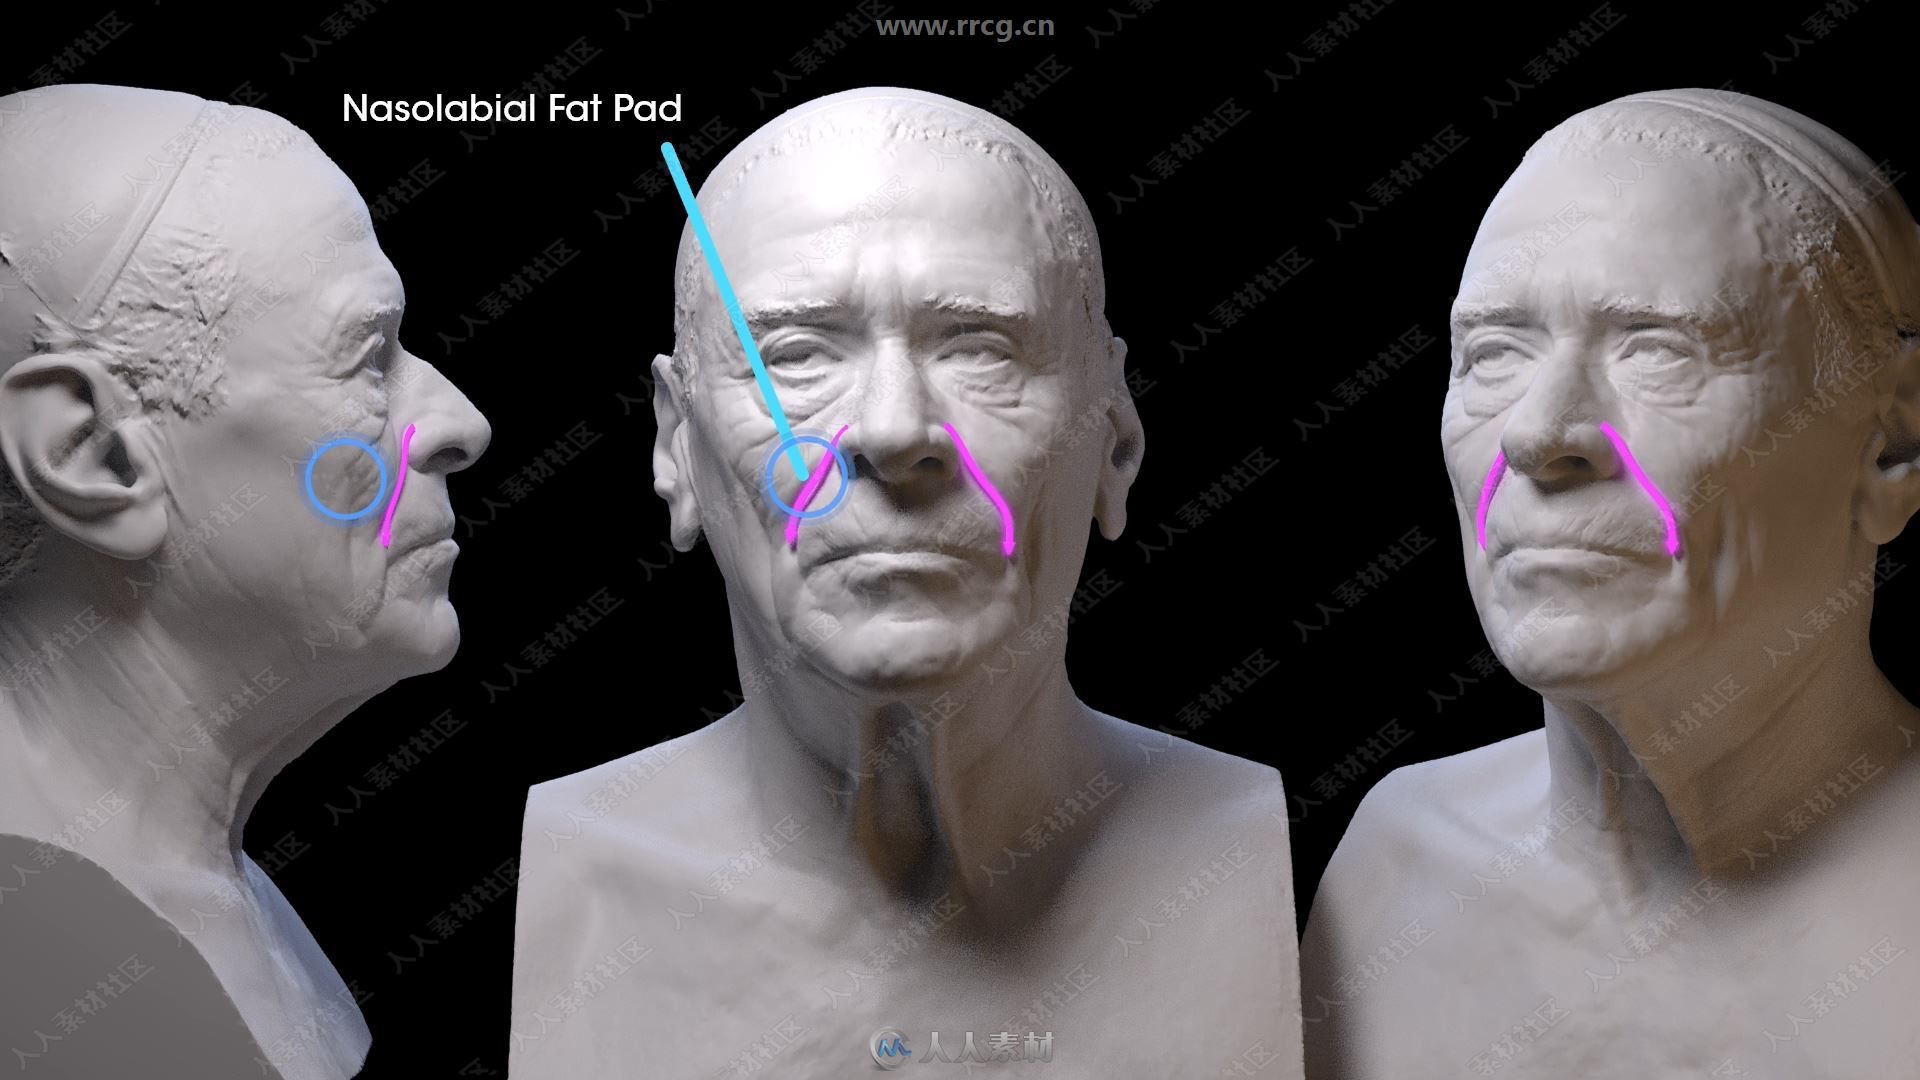 ZBrush脸部面部数字雕刻完全训练视频教程